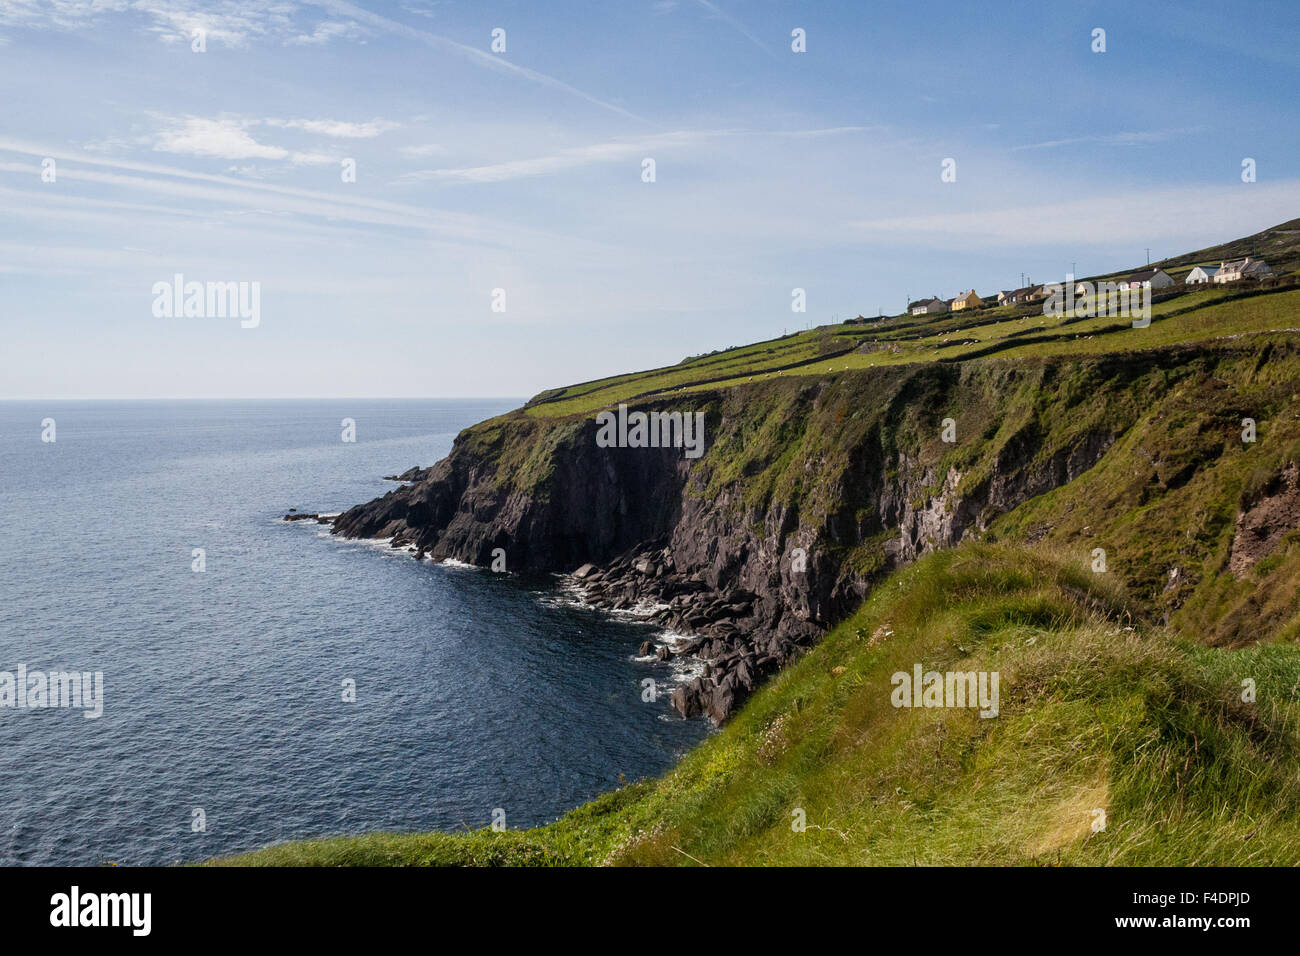 Die zerklüftete Küste und die grünen Hügel Irlands. Eine wunderschöne zerklüftete Landschaft. Stockfoto